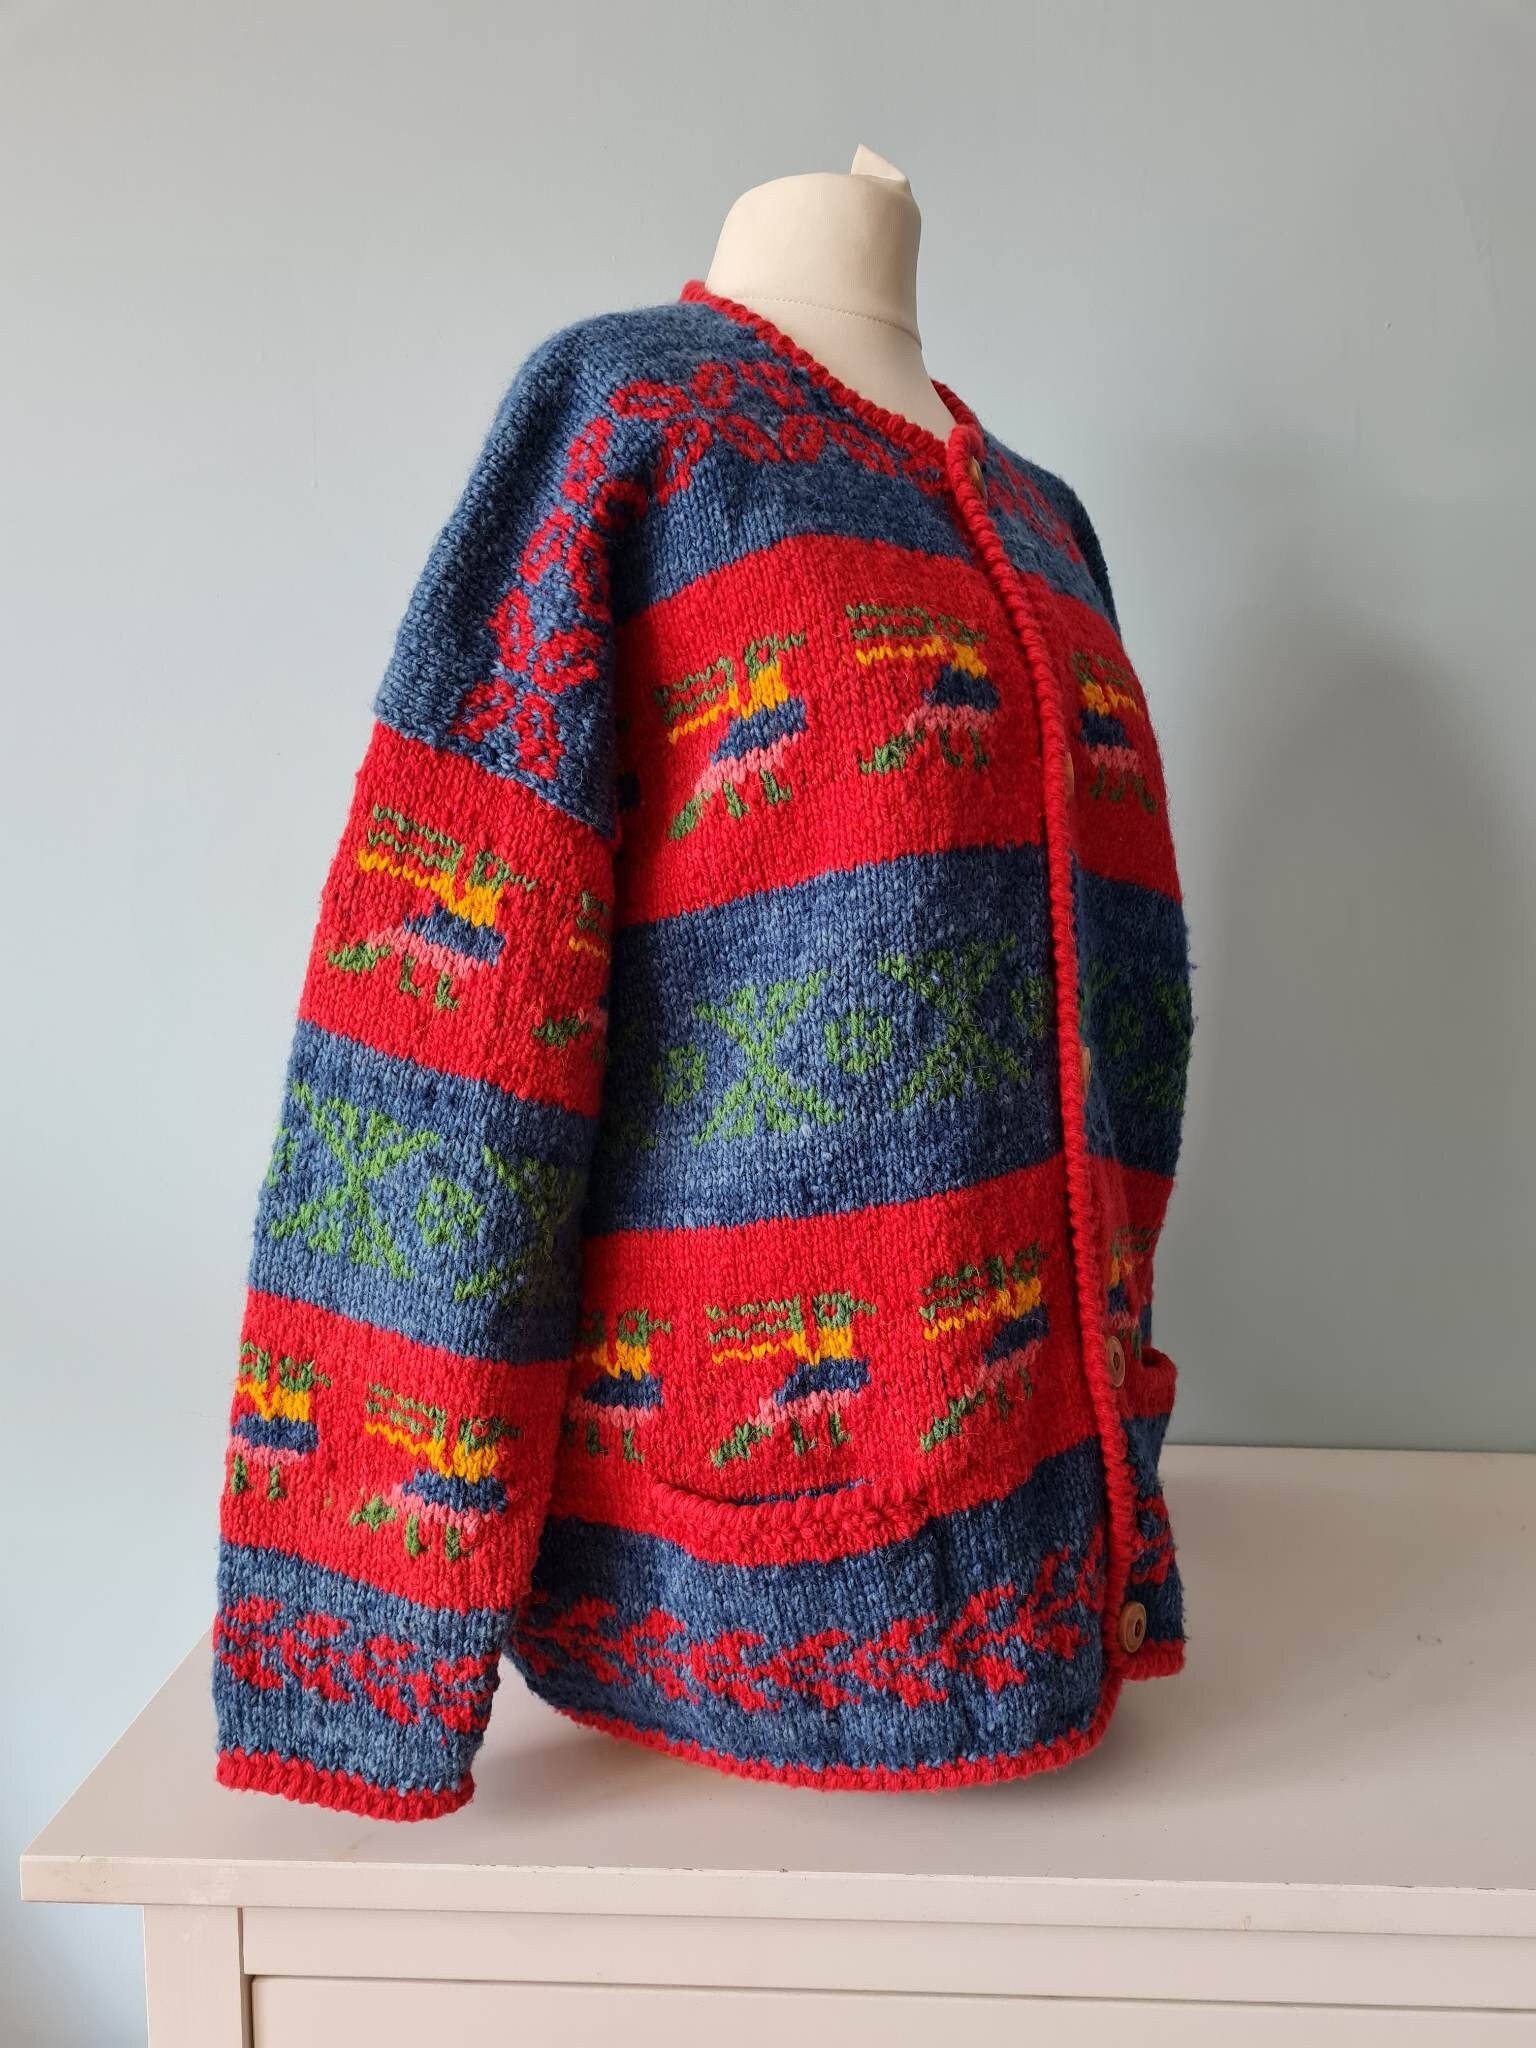 Vintage Amano knit